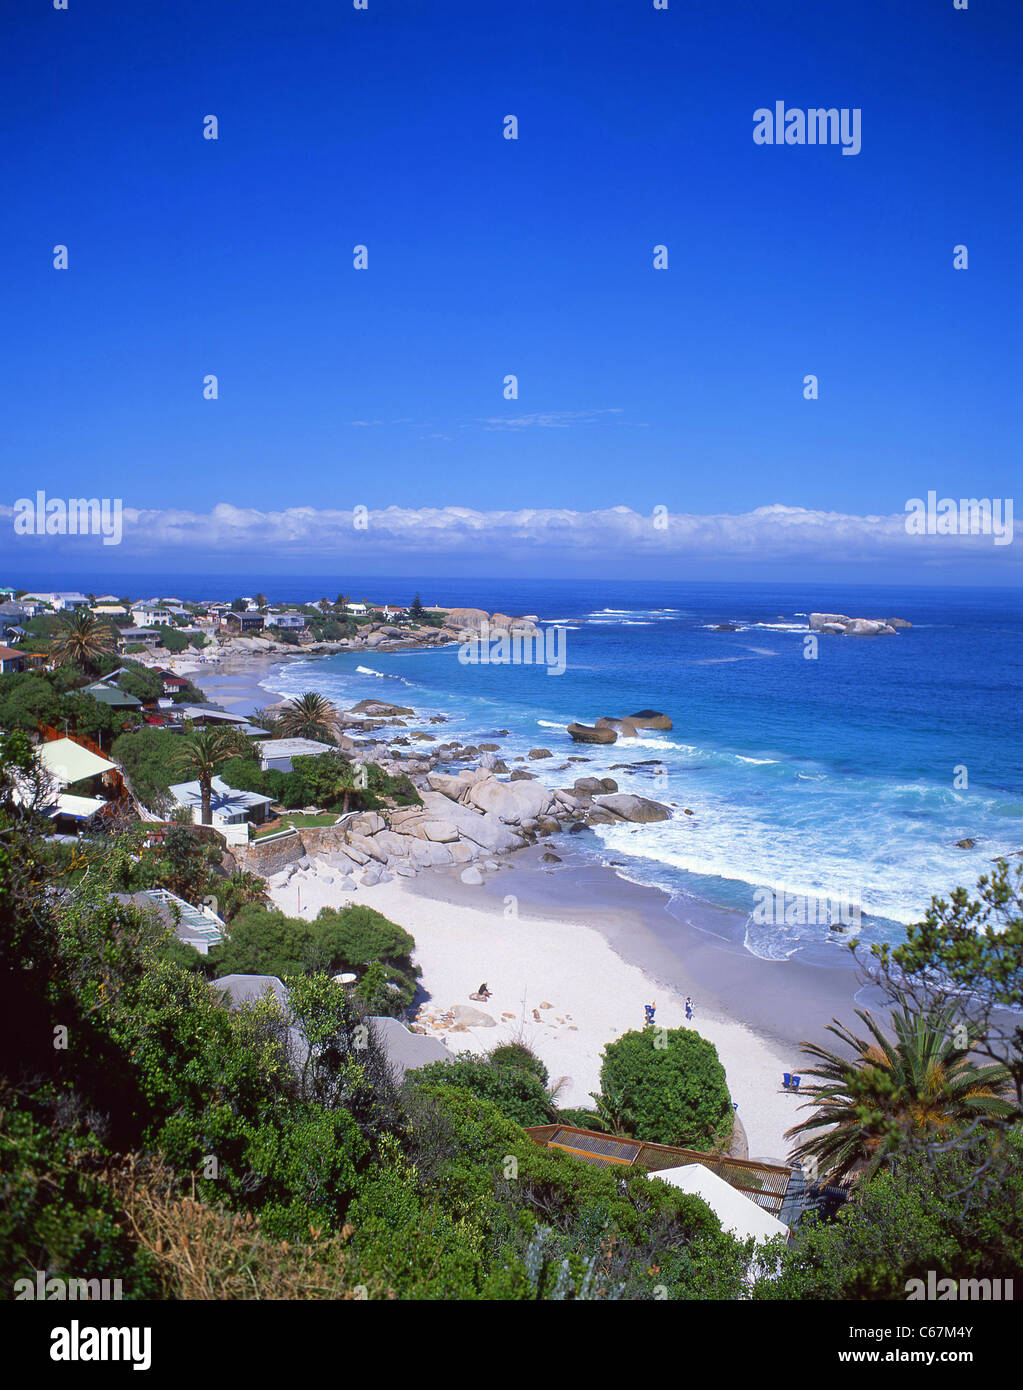 La plage de Clifton, le Clifton, Cape Town, Western Cape, Afrique du Sud Banque D'Images